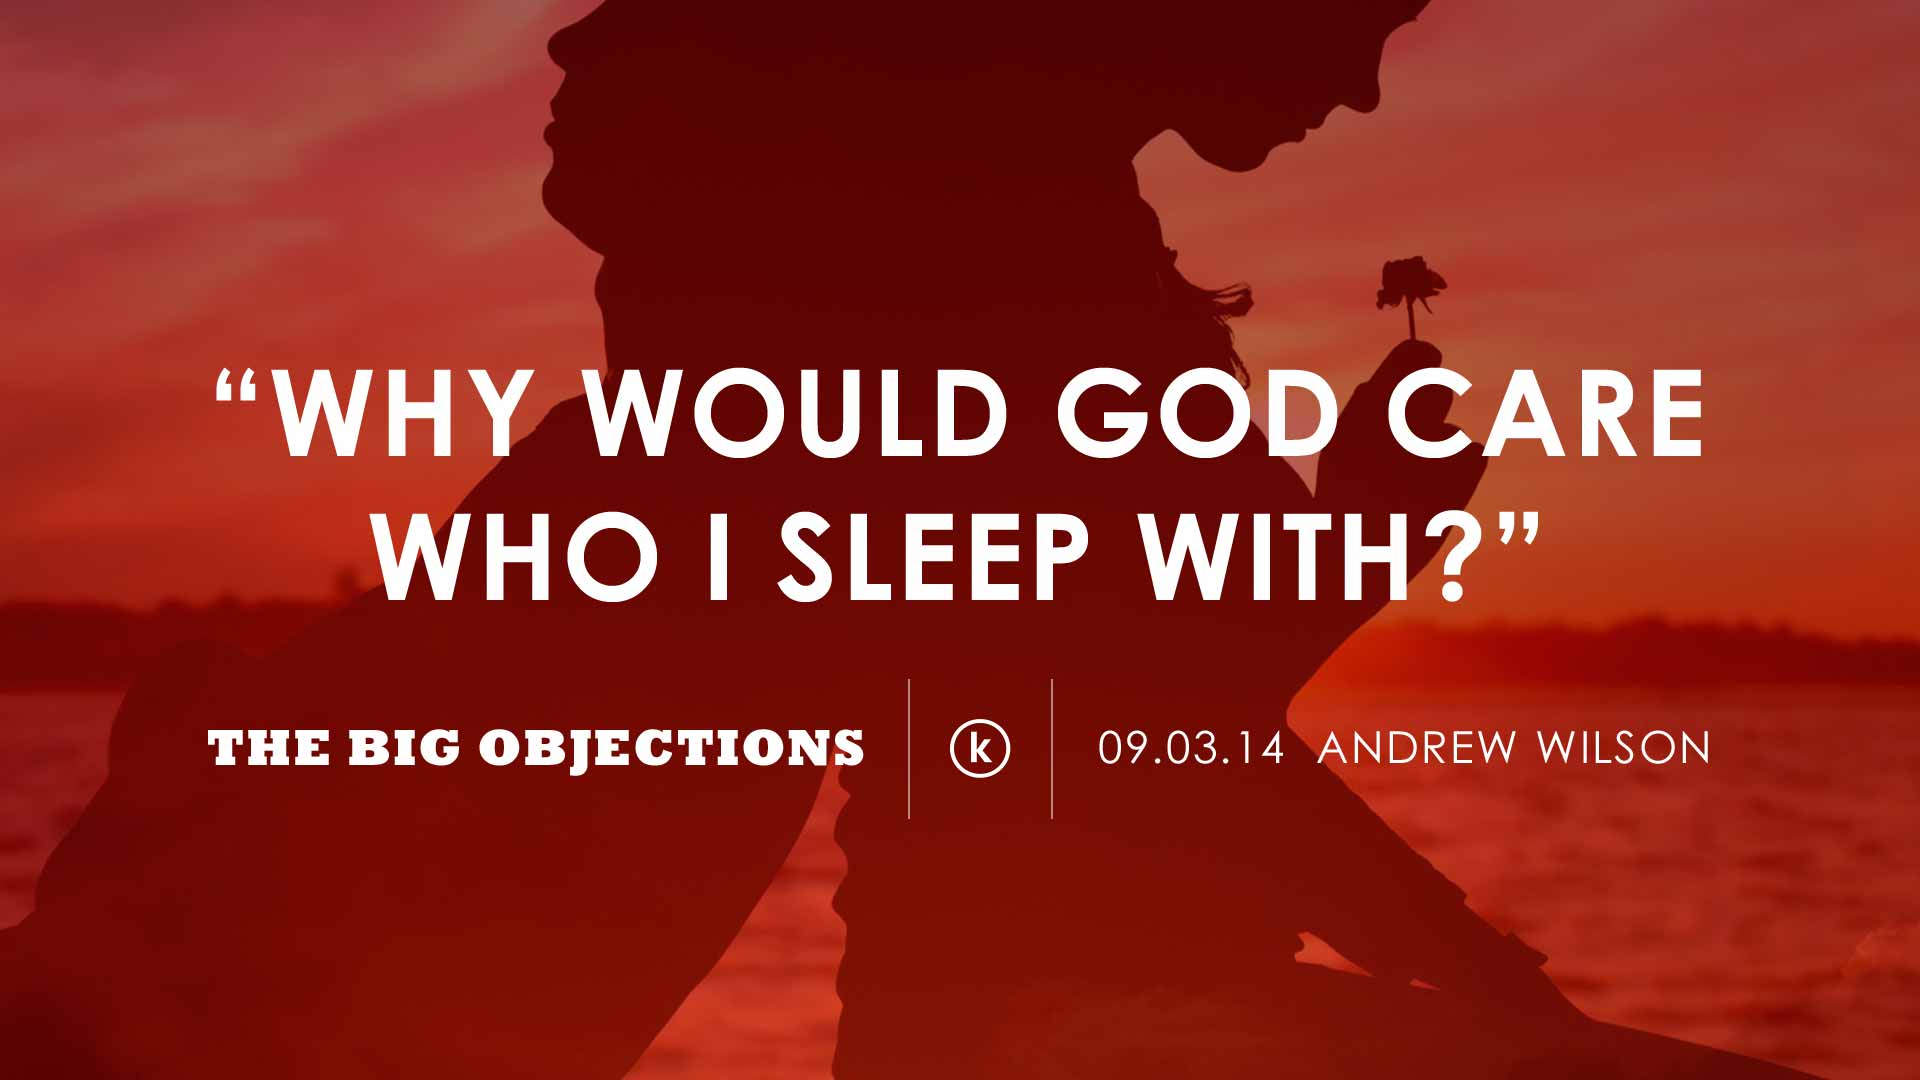 Why would God care who I sleep with?